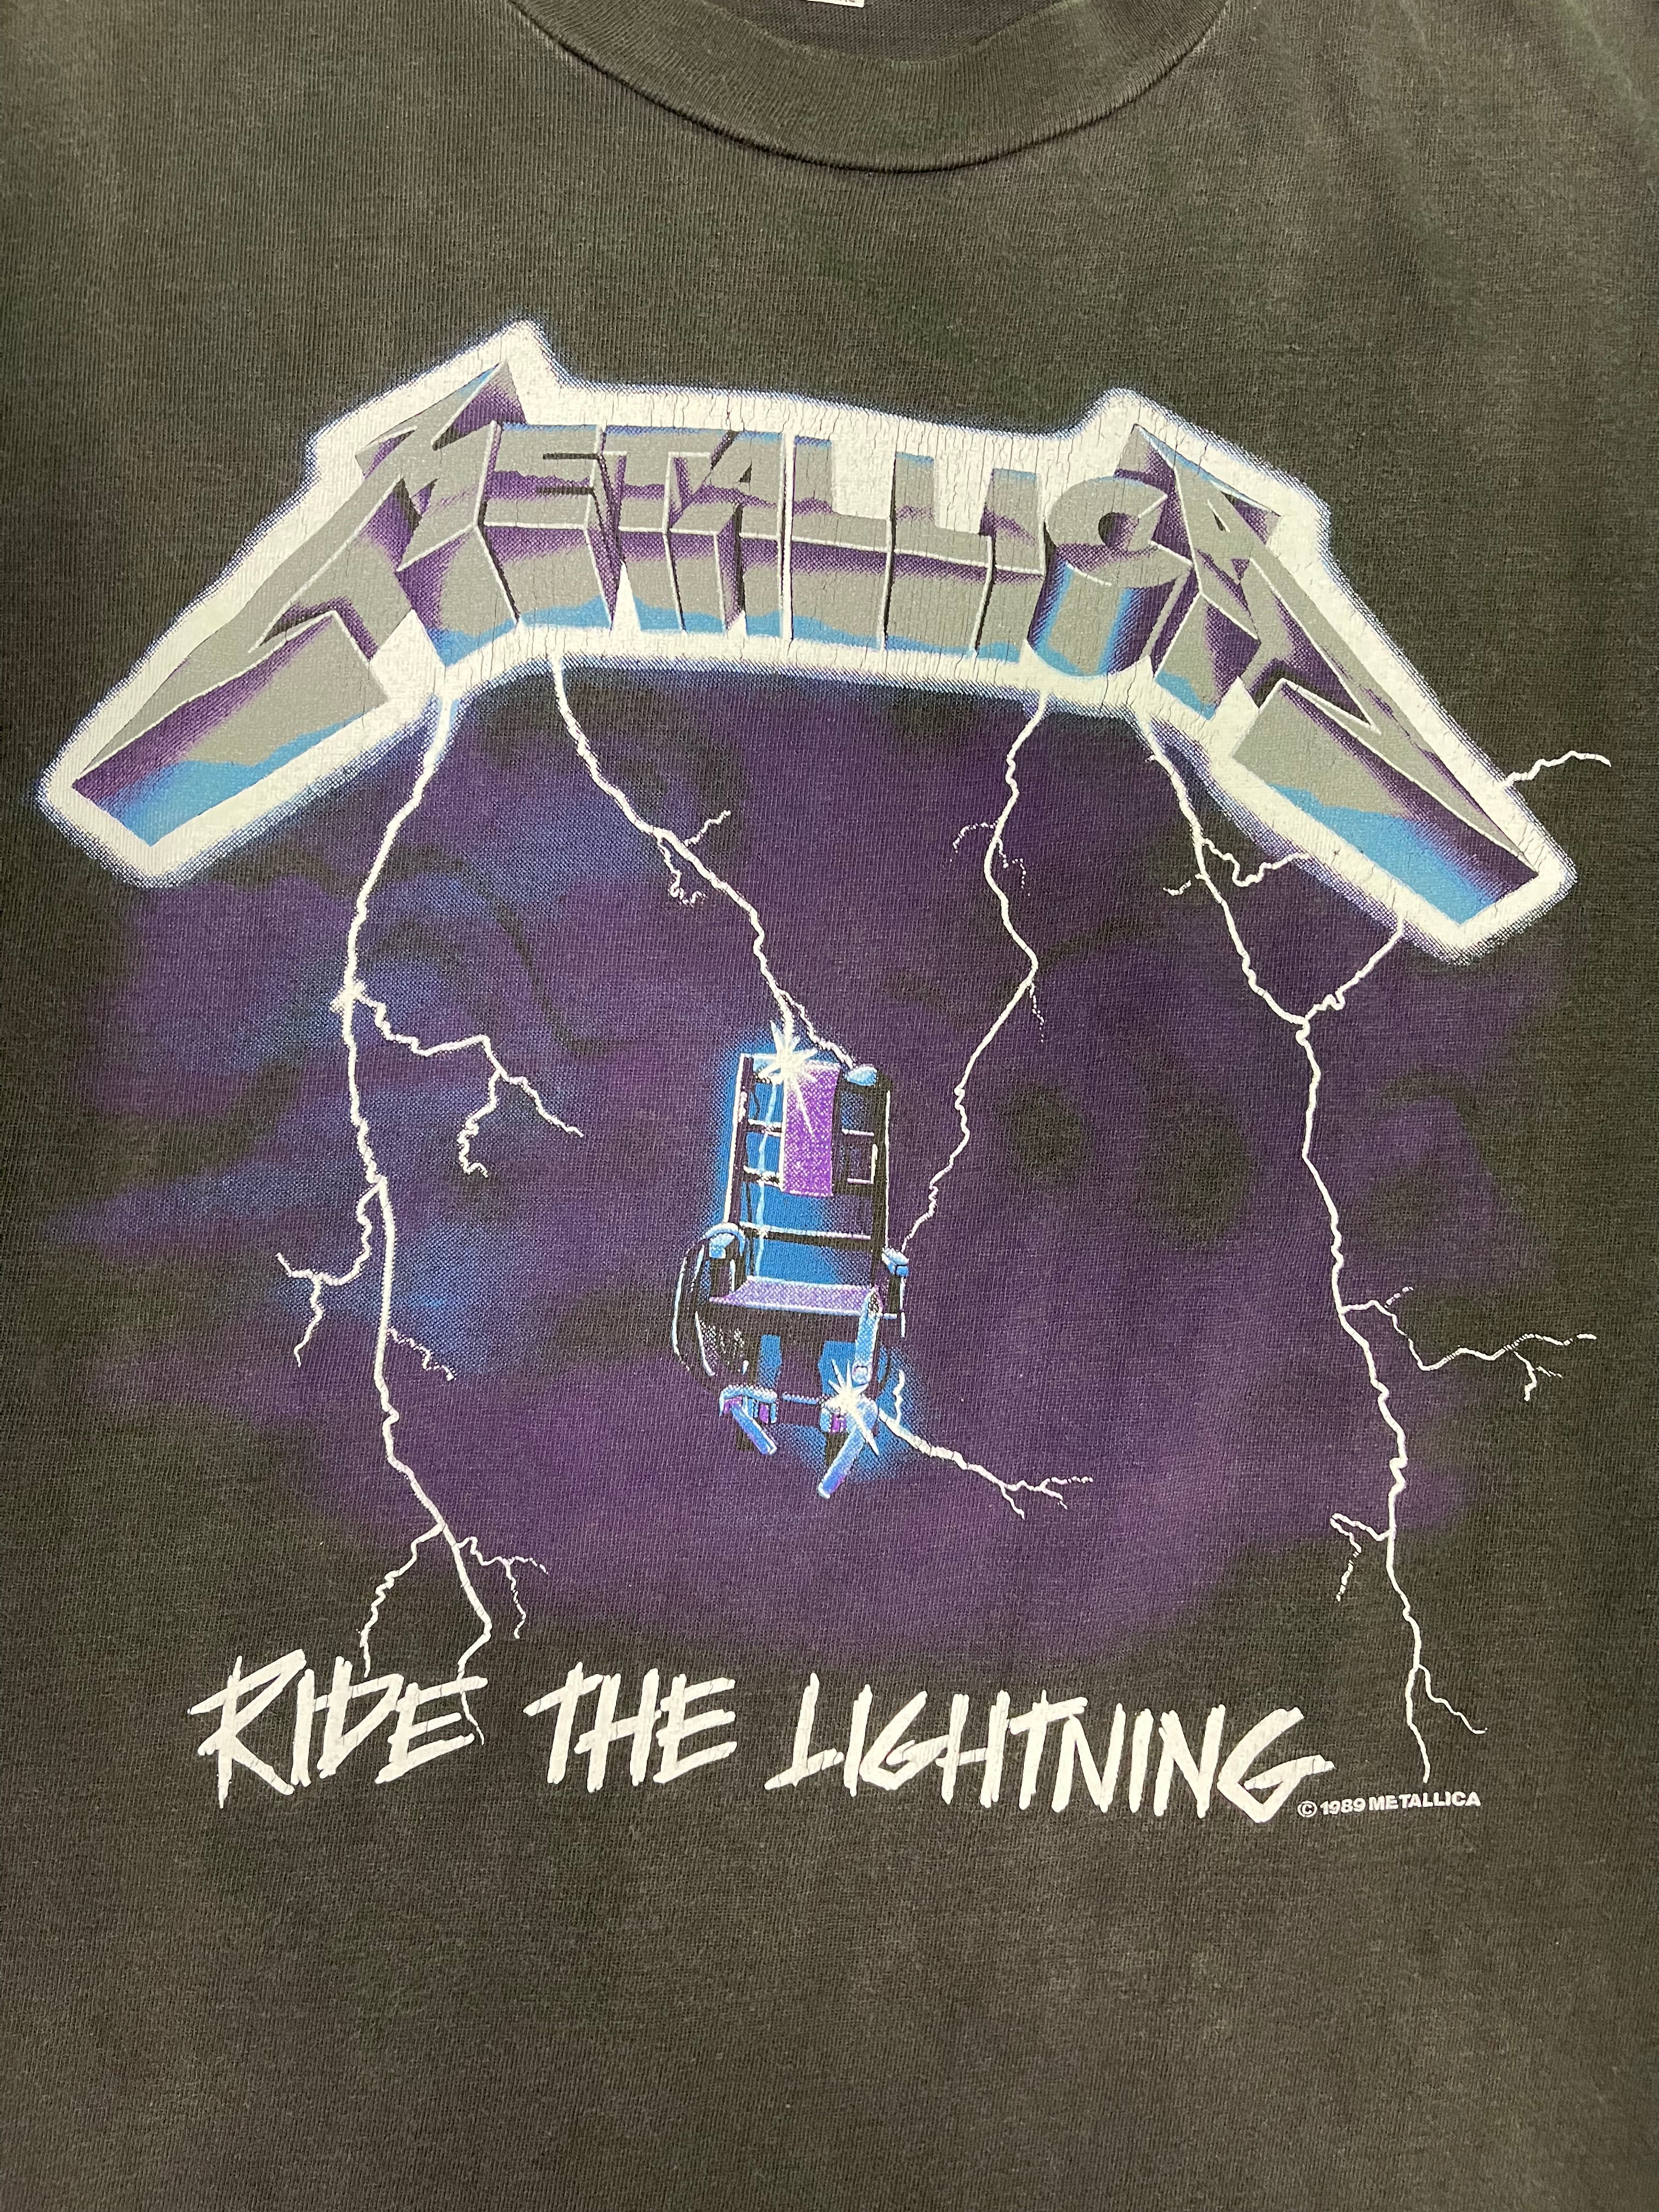 Metallica 'Ride The Lightning' T-Shirt